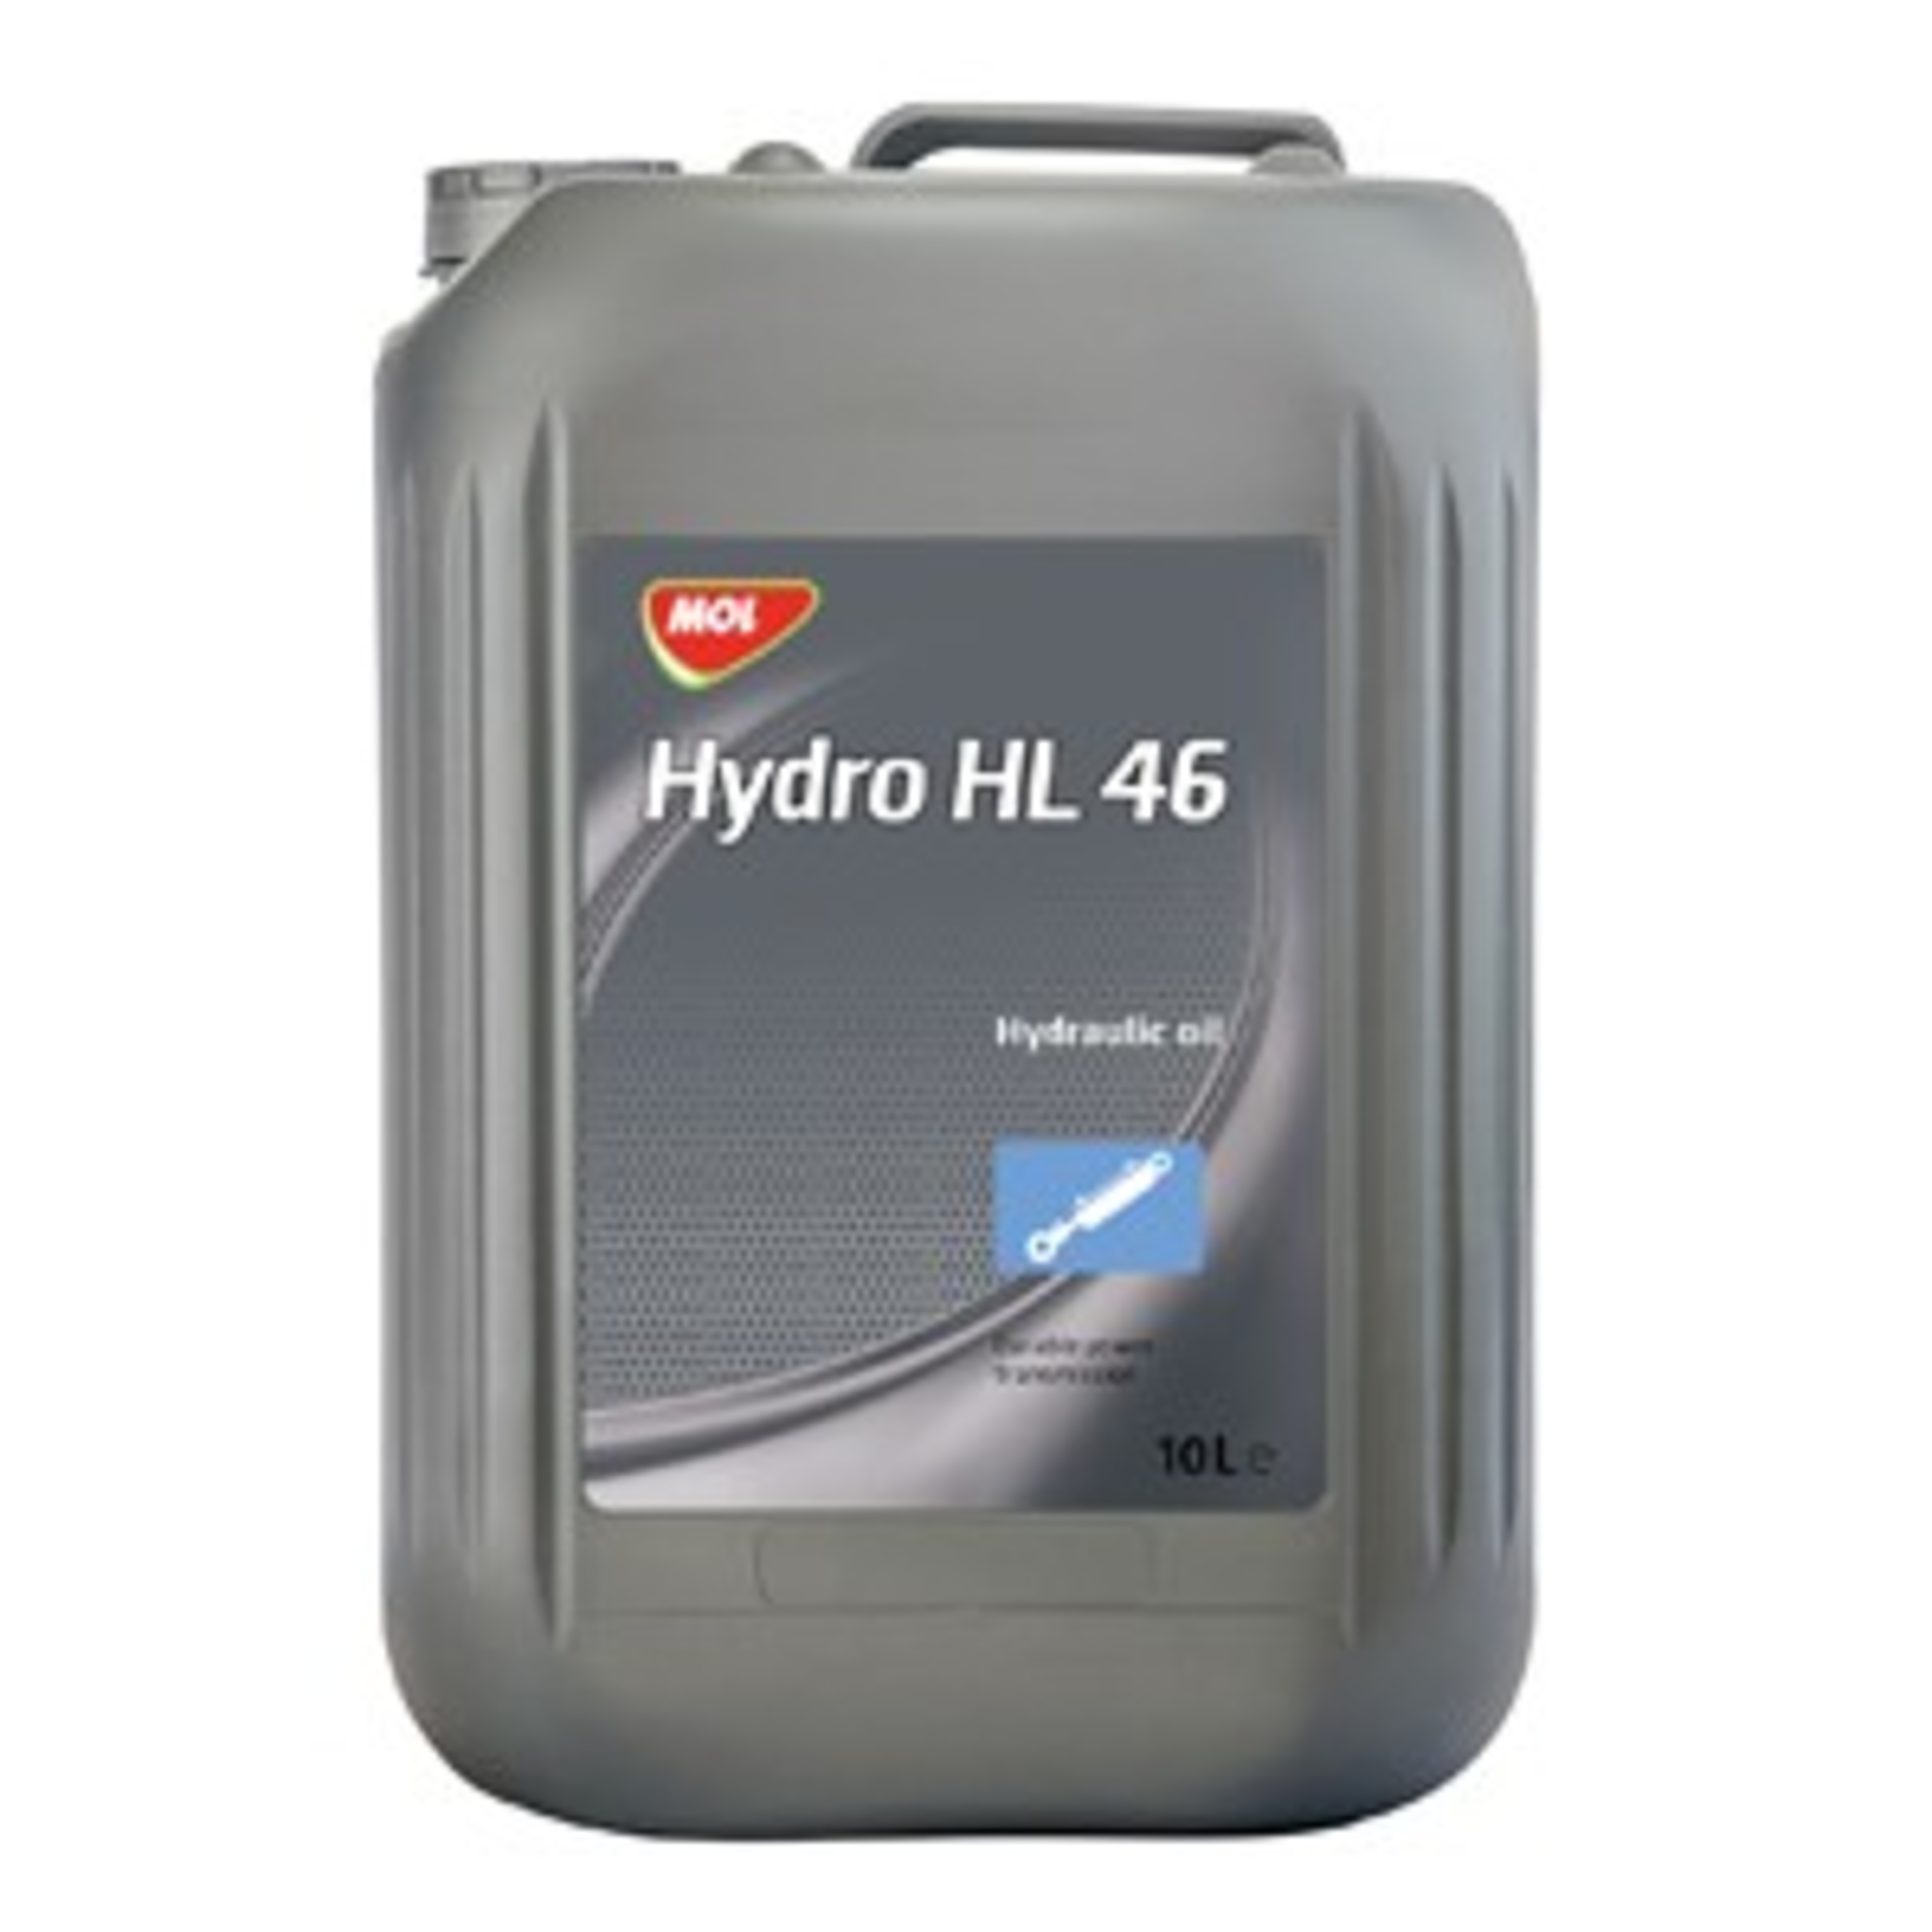 MOL Hydro HL 46 180KG 13006287